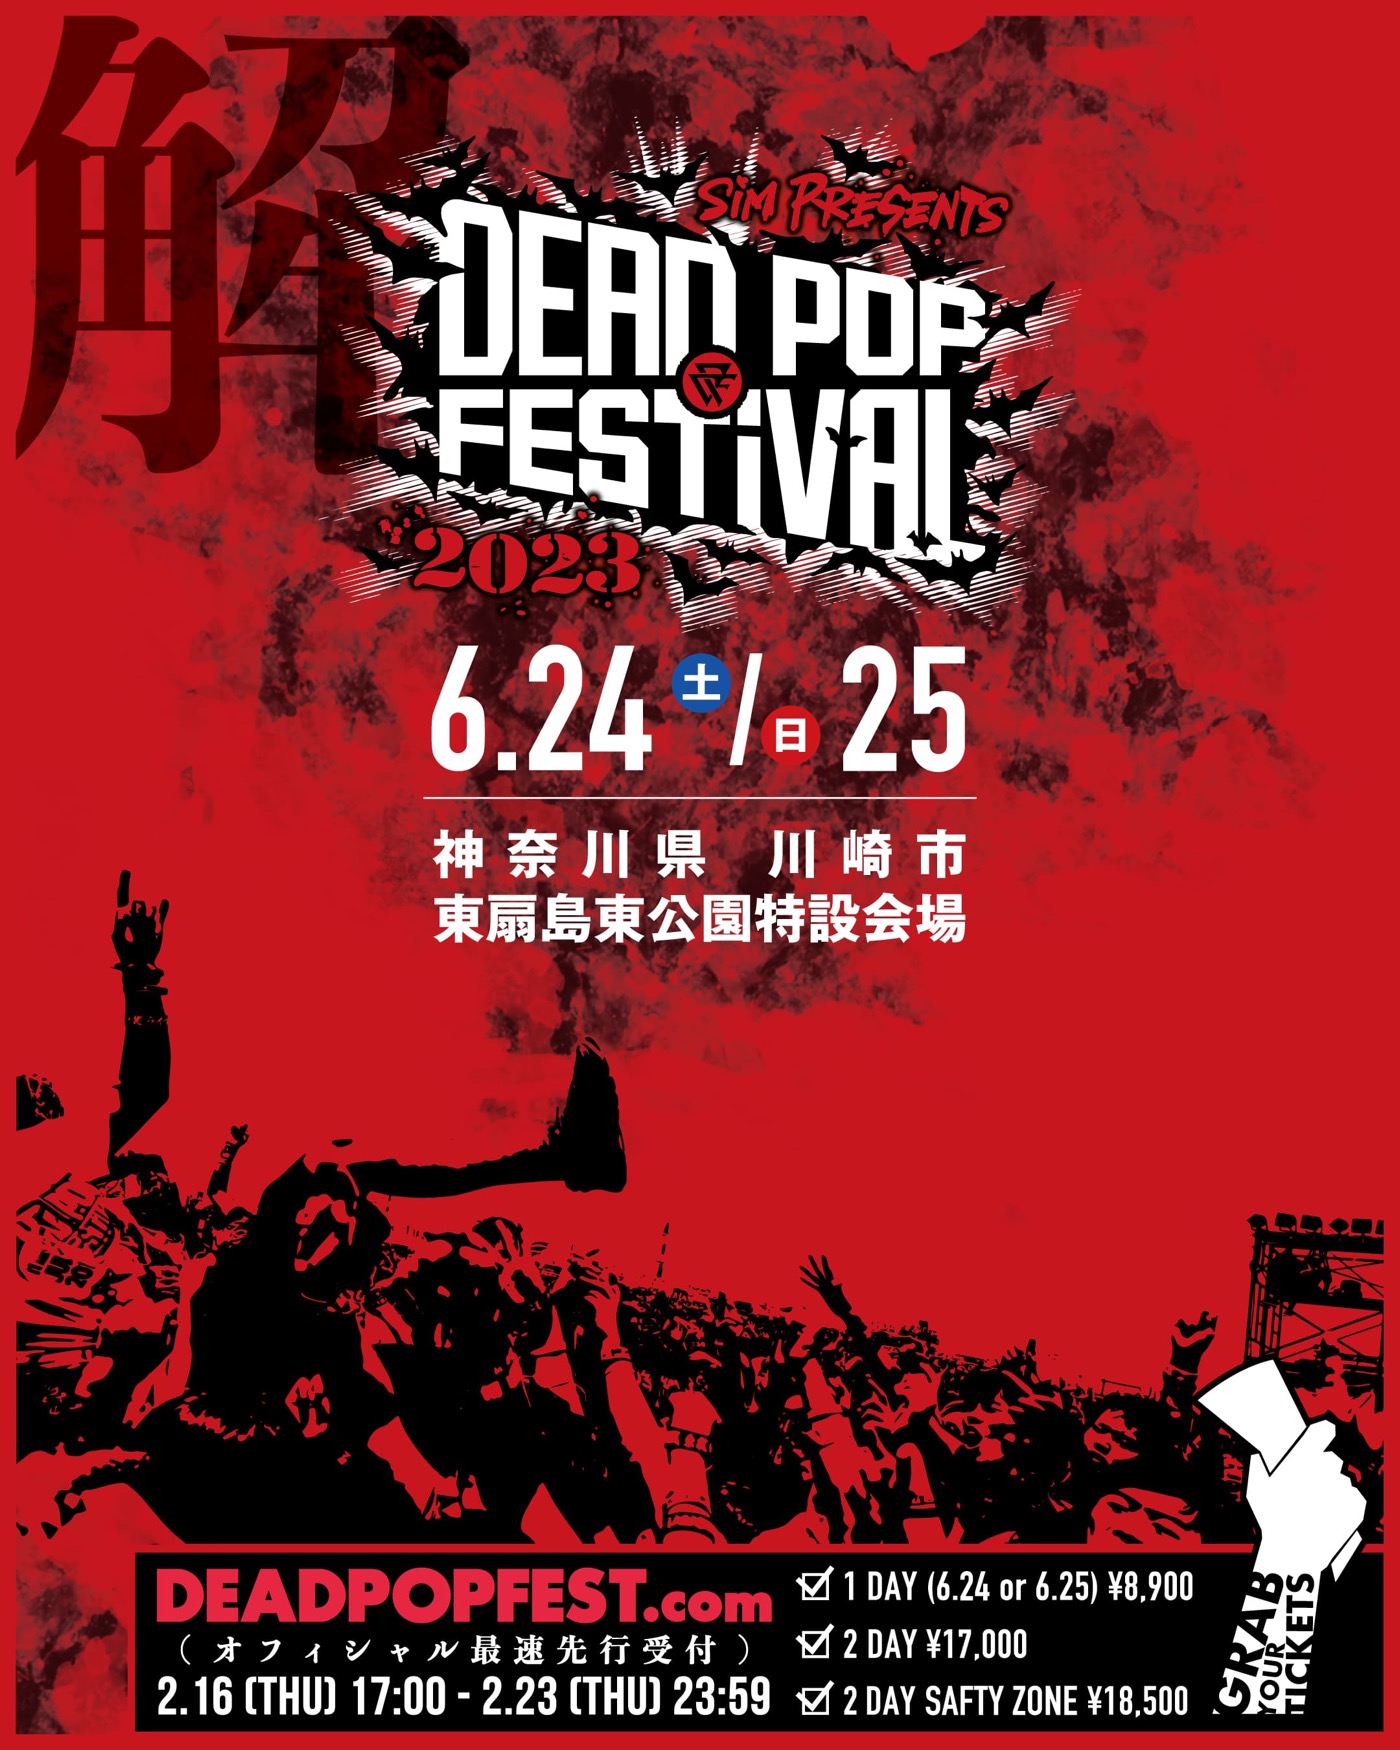 SiM主催フェス『DEAD POP FESTiVAL』、コロナ禍での変遷を描いたティザー映像公開 - 画像一覧（1/2）